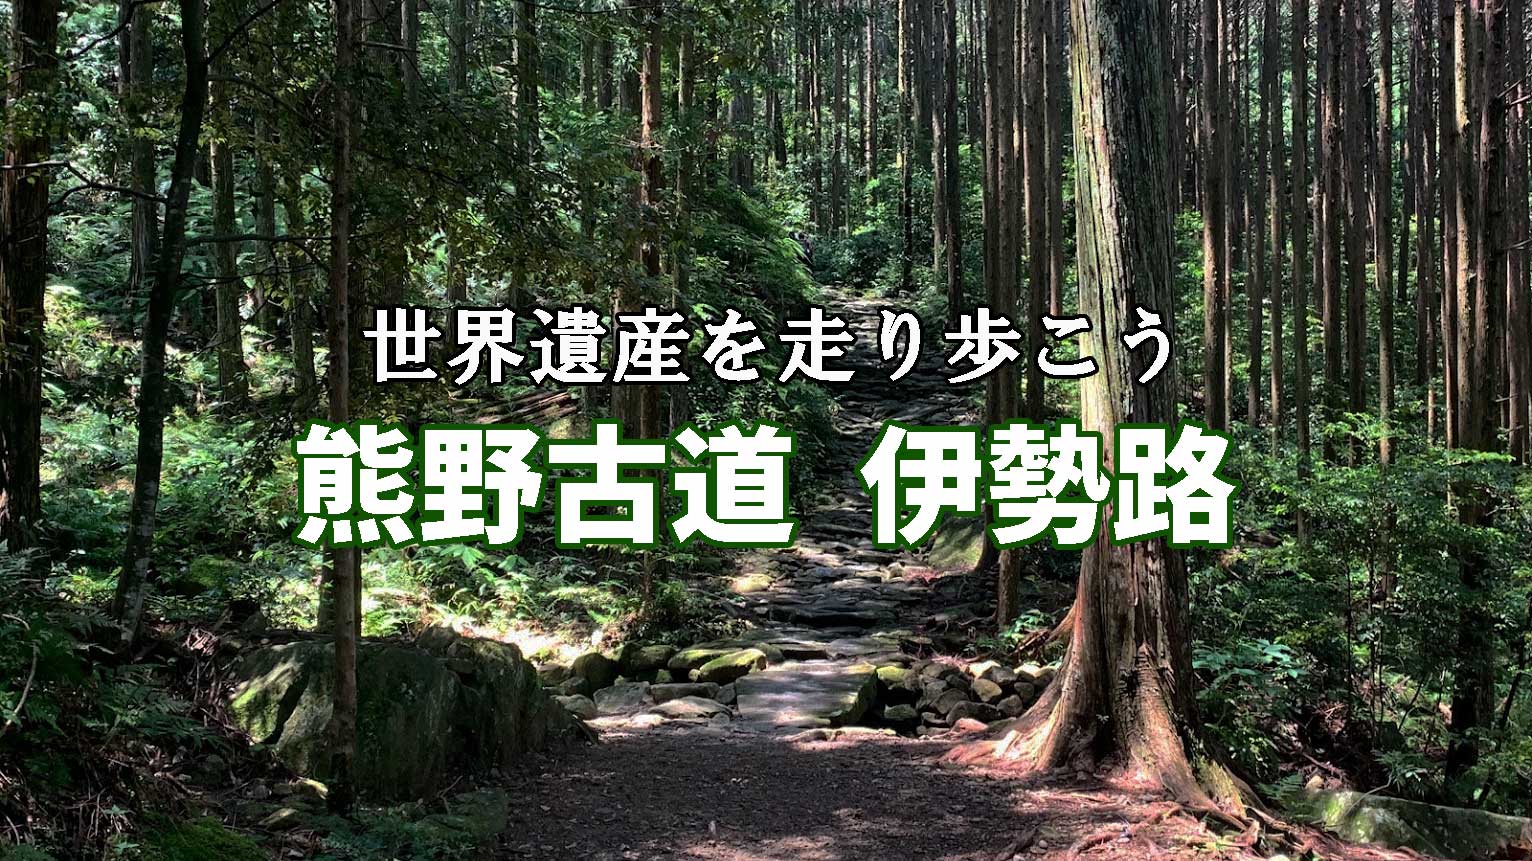 ユネスコ世界遺産に登録されている熊野古道・伊勢路を走り歩いて巡ろう